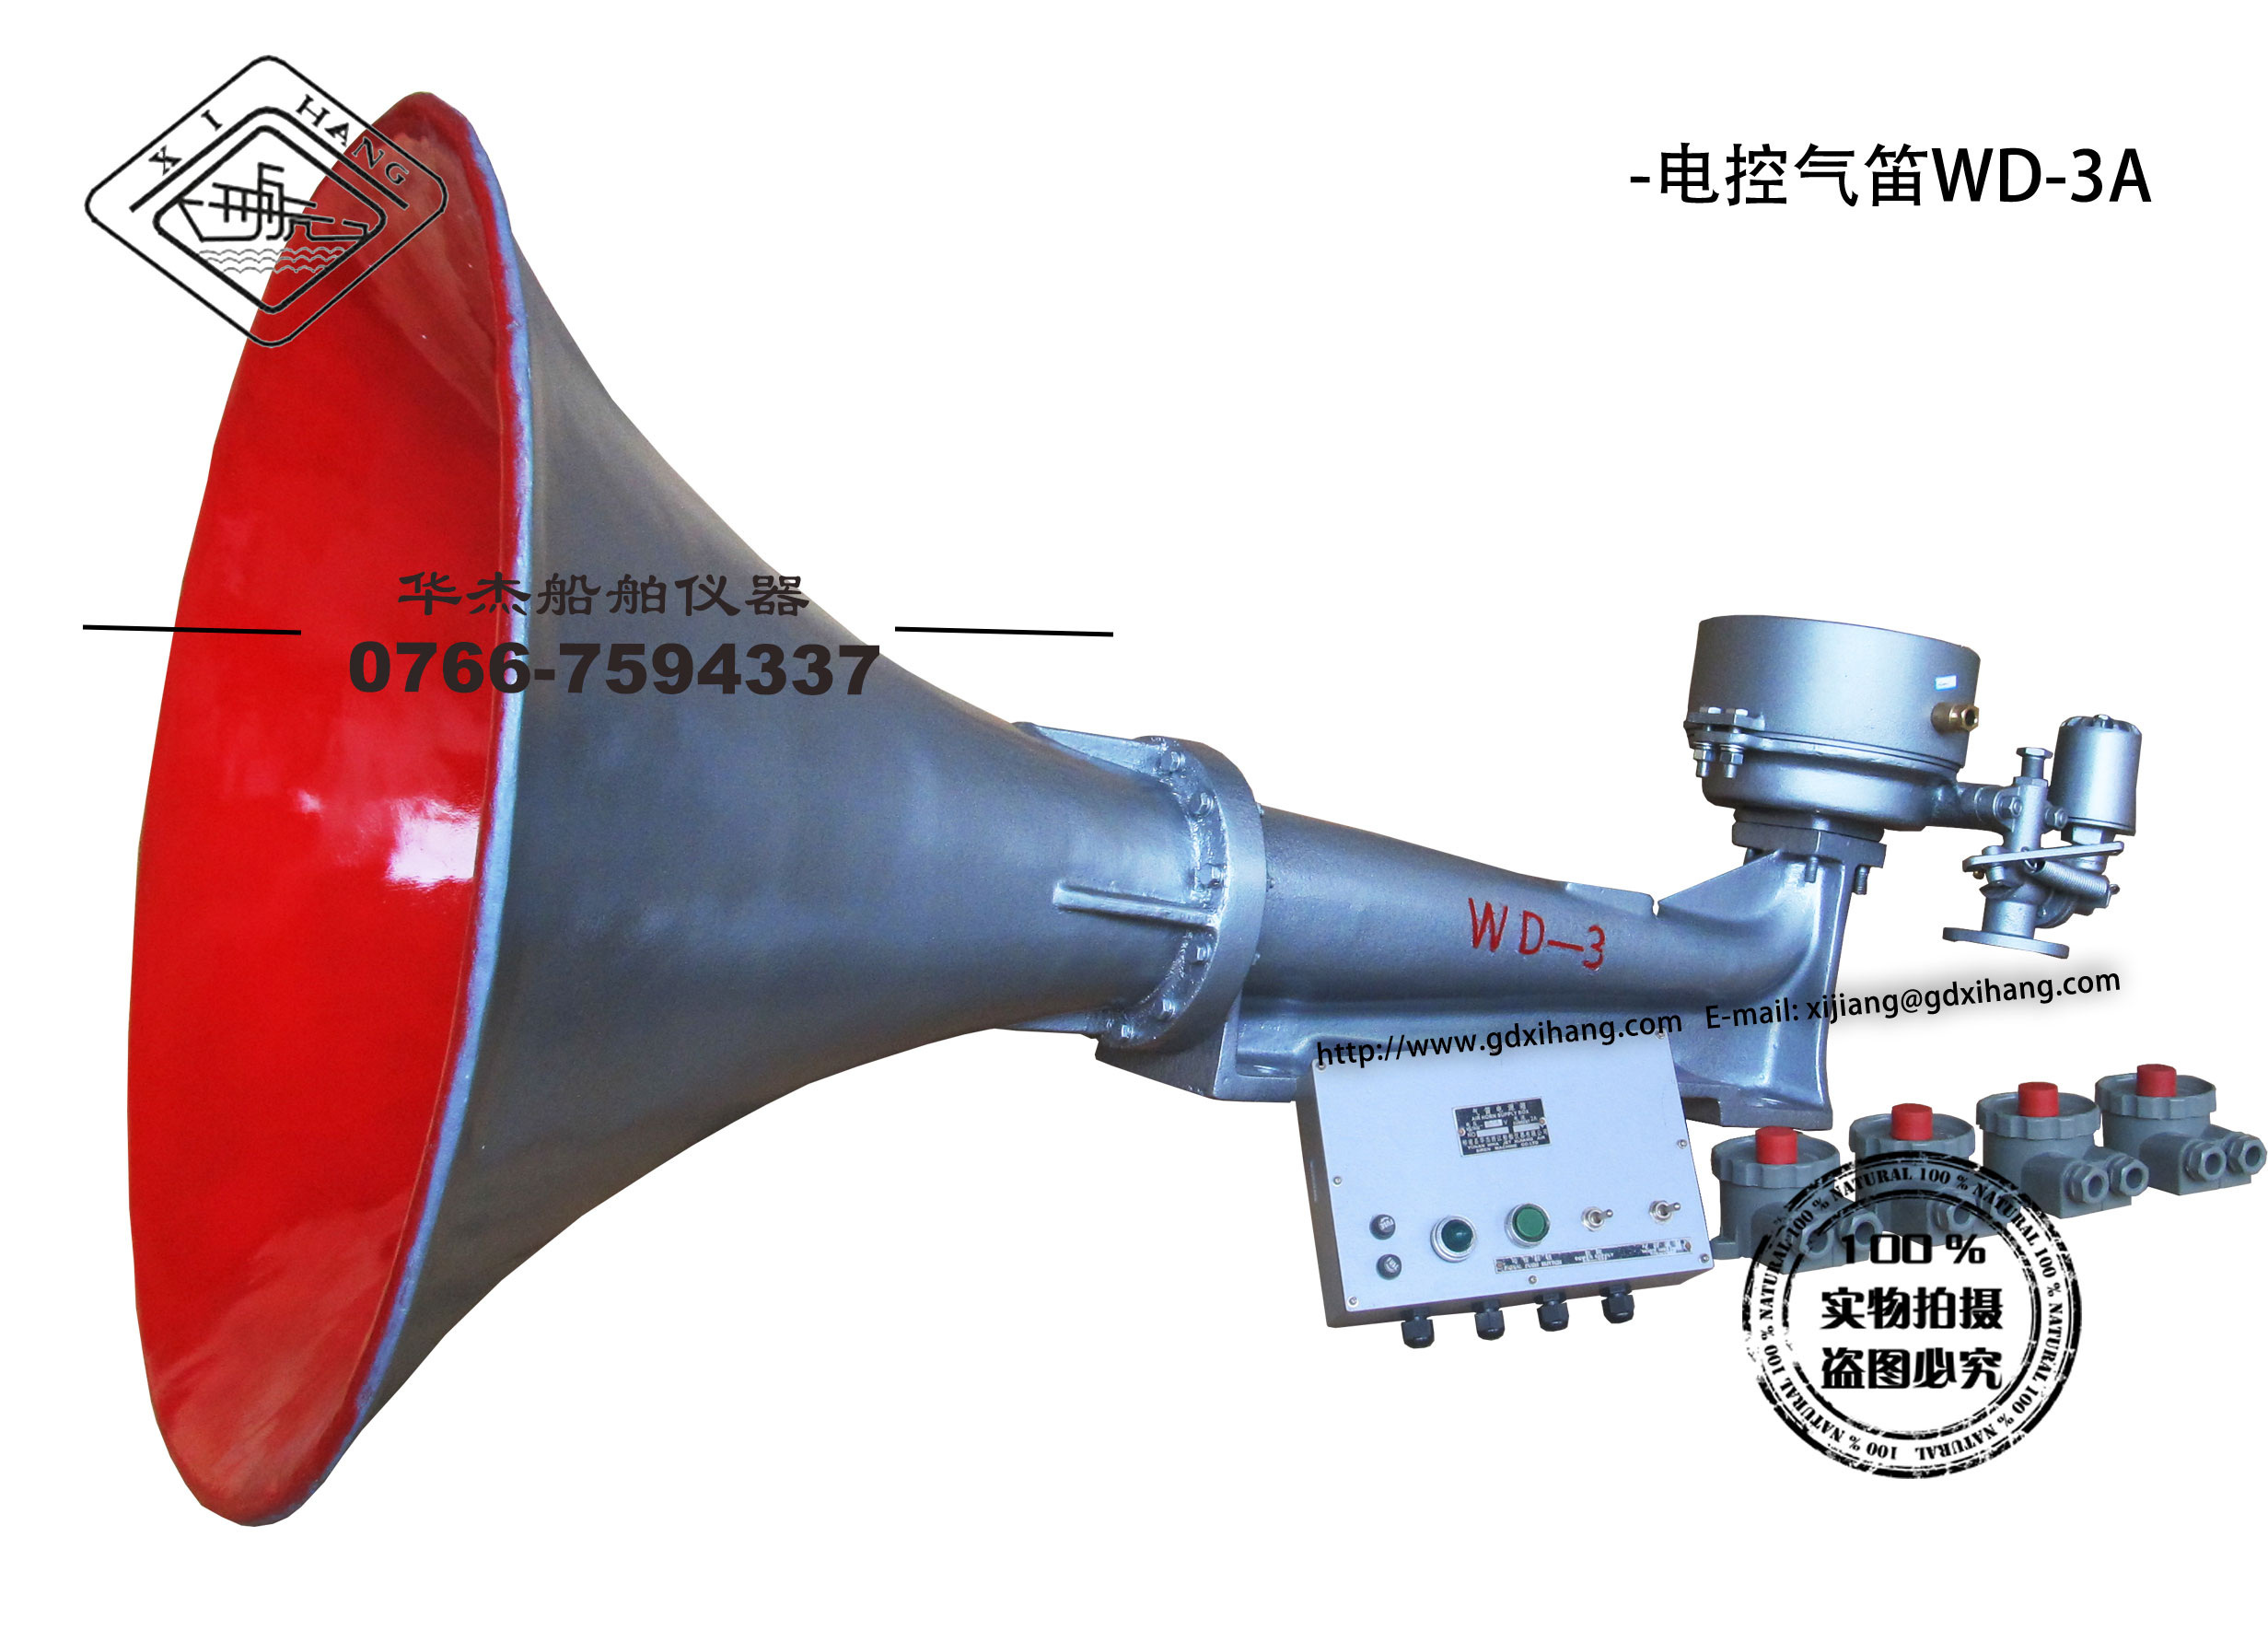  电控气笛WD-3A